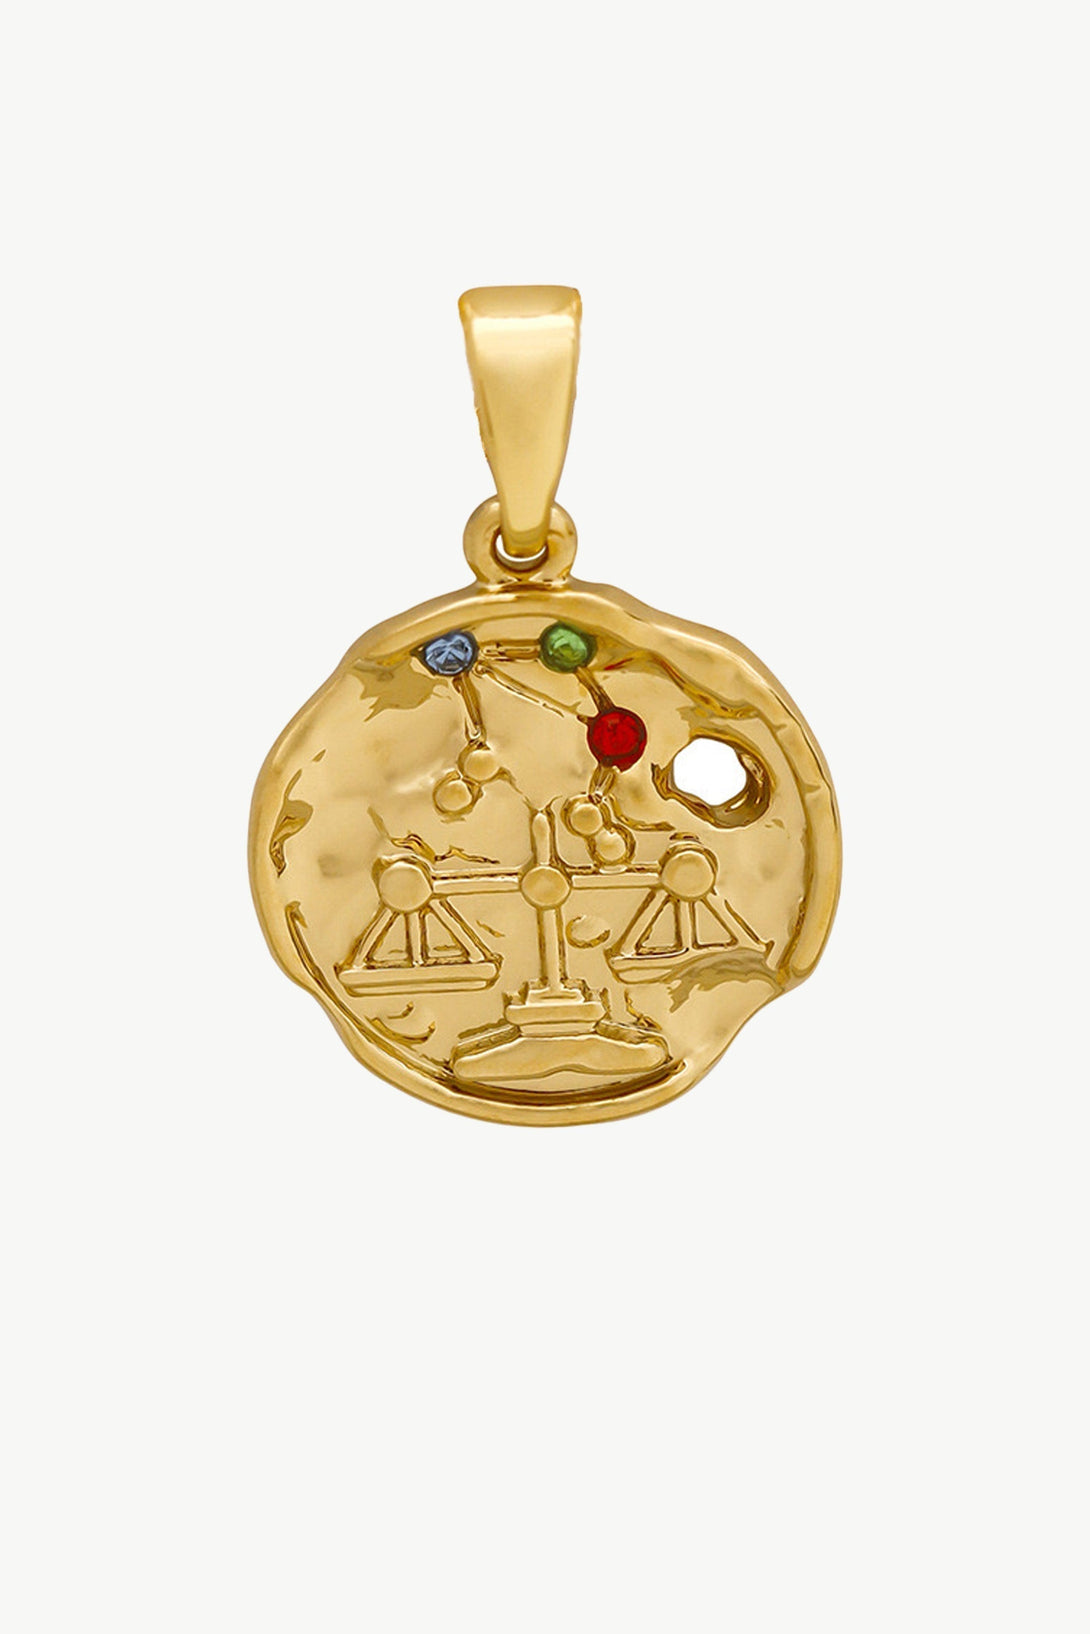 Gold Sculptural Zodiac Sign Pendant Necklace Set - Classicharms